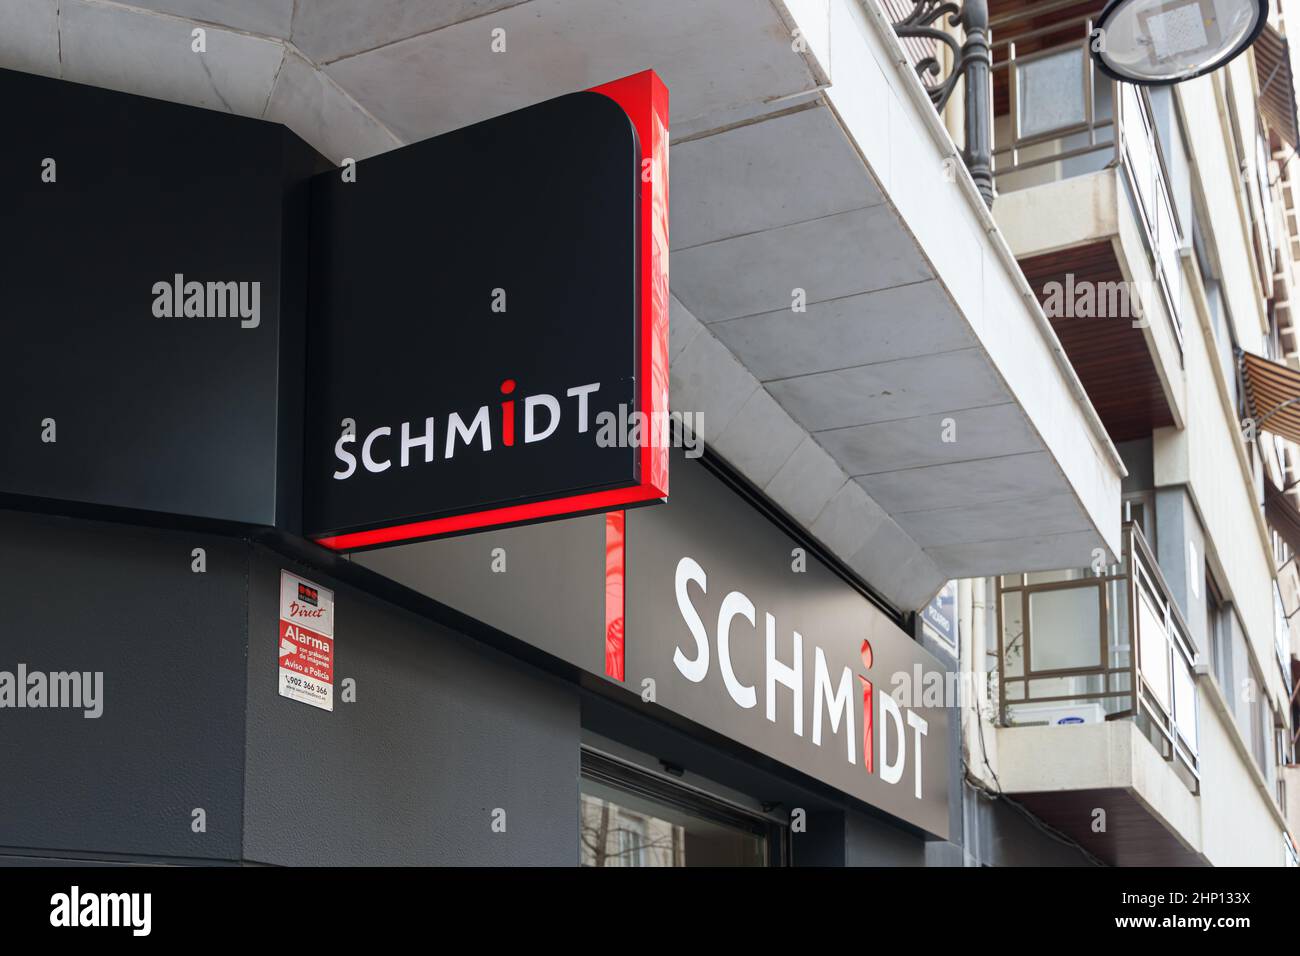 VALENCIA, SPANIEN - 15. FEBRUAR 2022: Schmidt ist ein europäisches Unternehmen, das sich auf das Design moderner Küchen- und Wohneinrichtungen spezialisiert hat Stockfoto